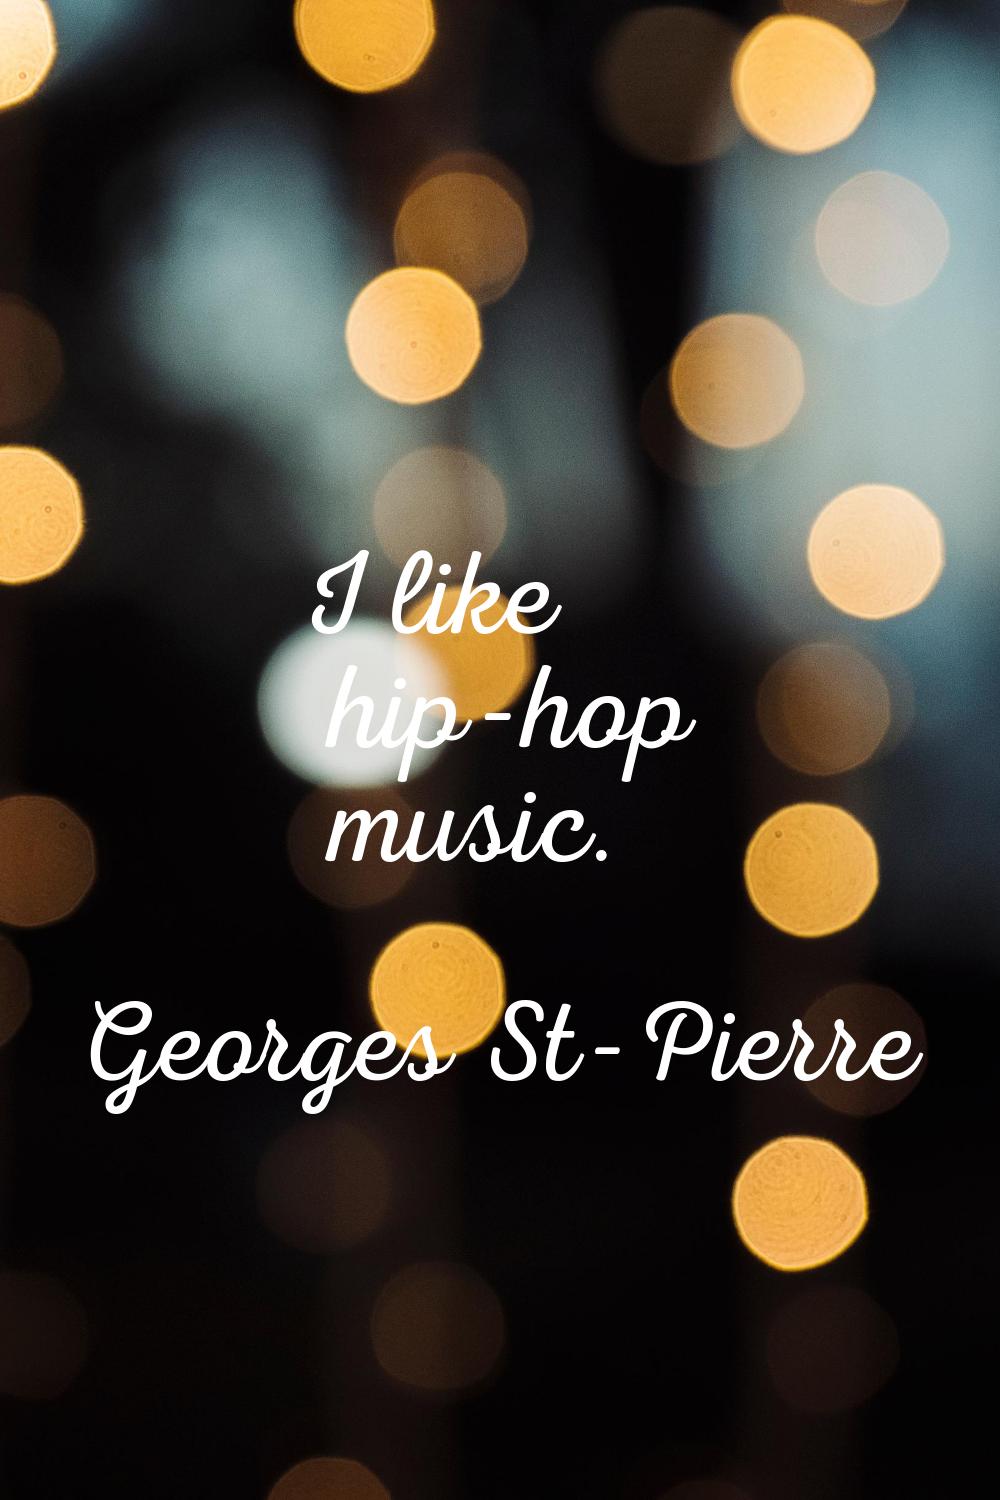 I like hip-hop music.